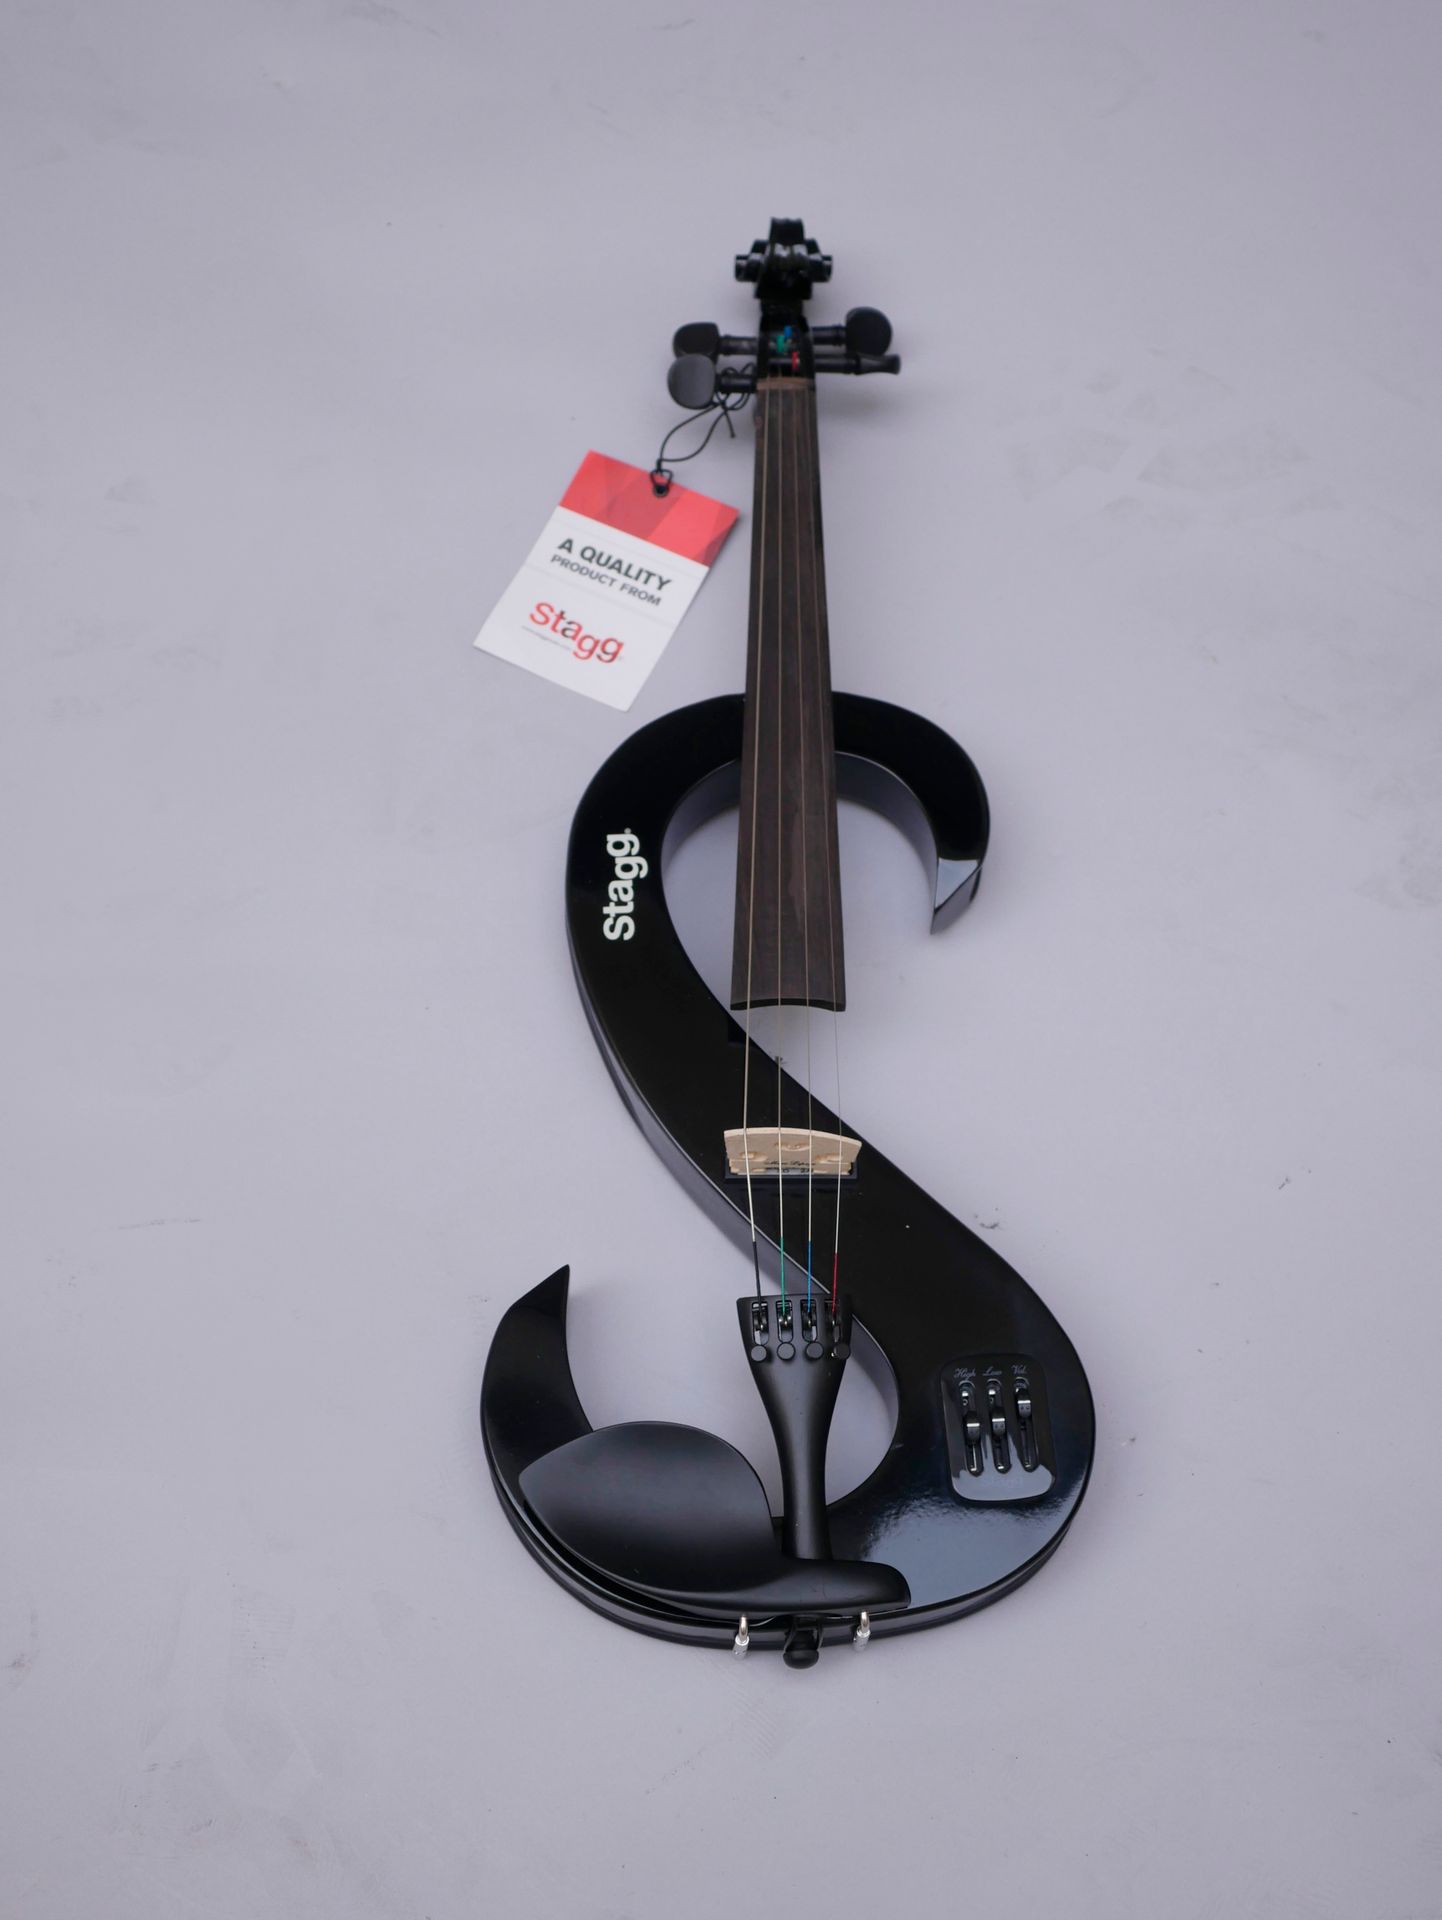 Null 斯塔格的实体电小提琴。

崭新的状态，完整地装在带蝴蝶结的软盒中。